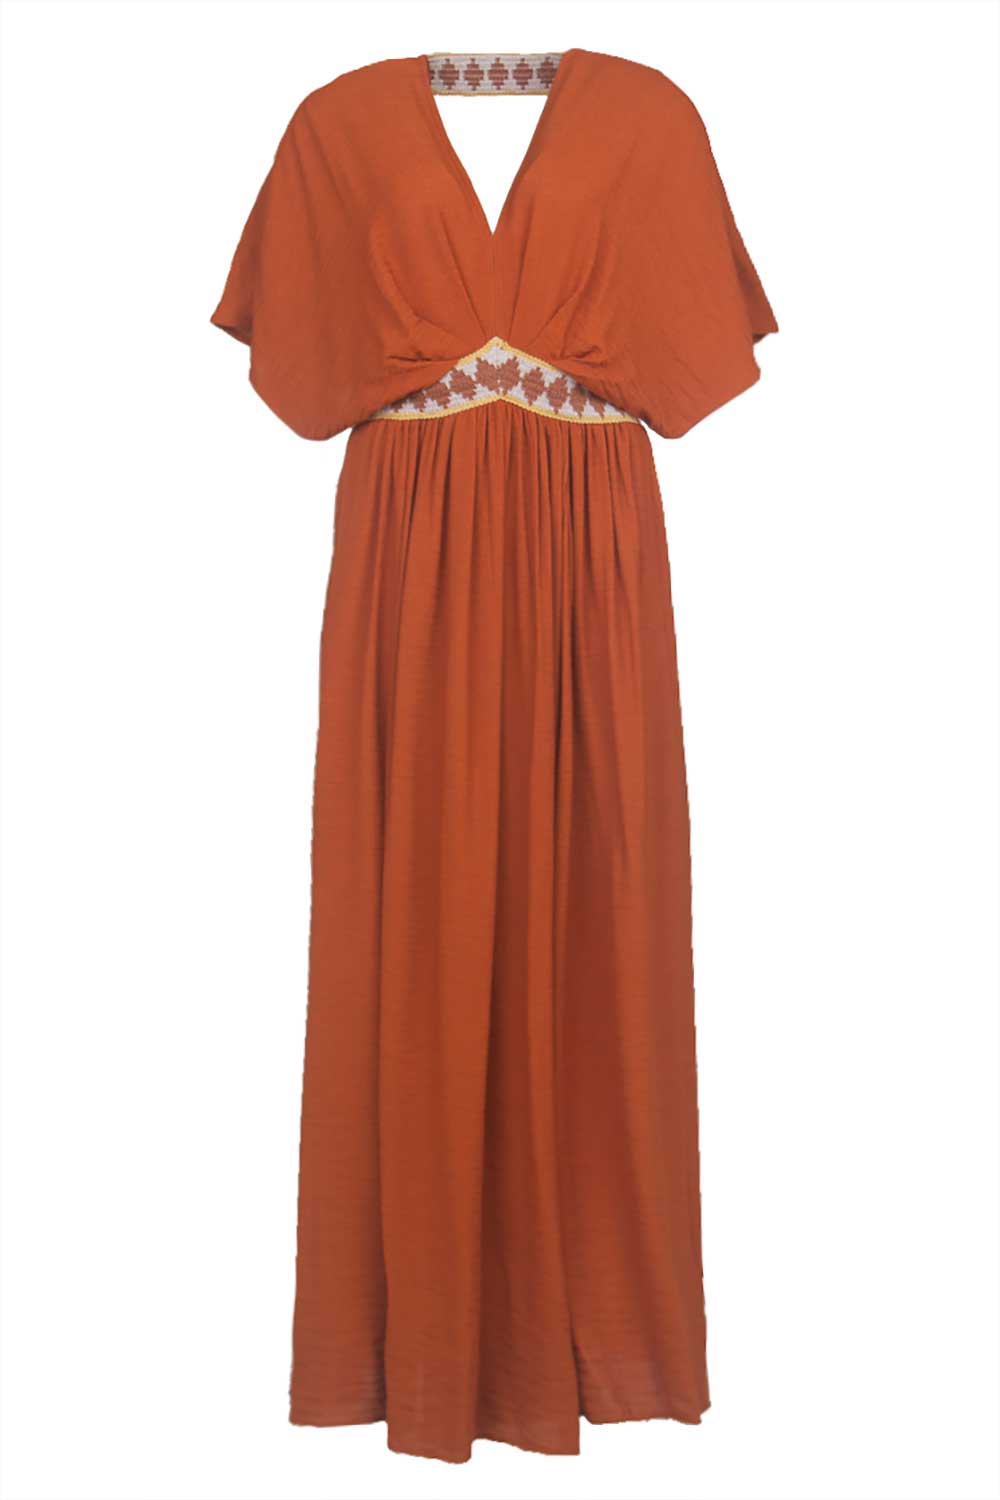 Louizon Ecovero maxi-jurk Idea rood